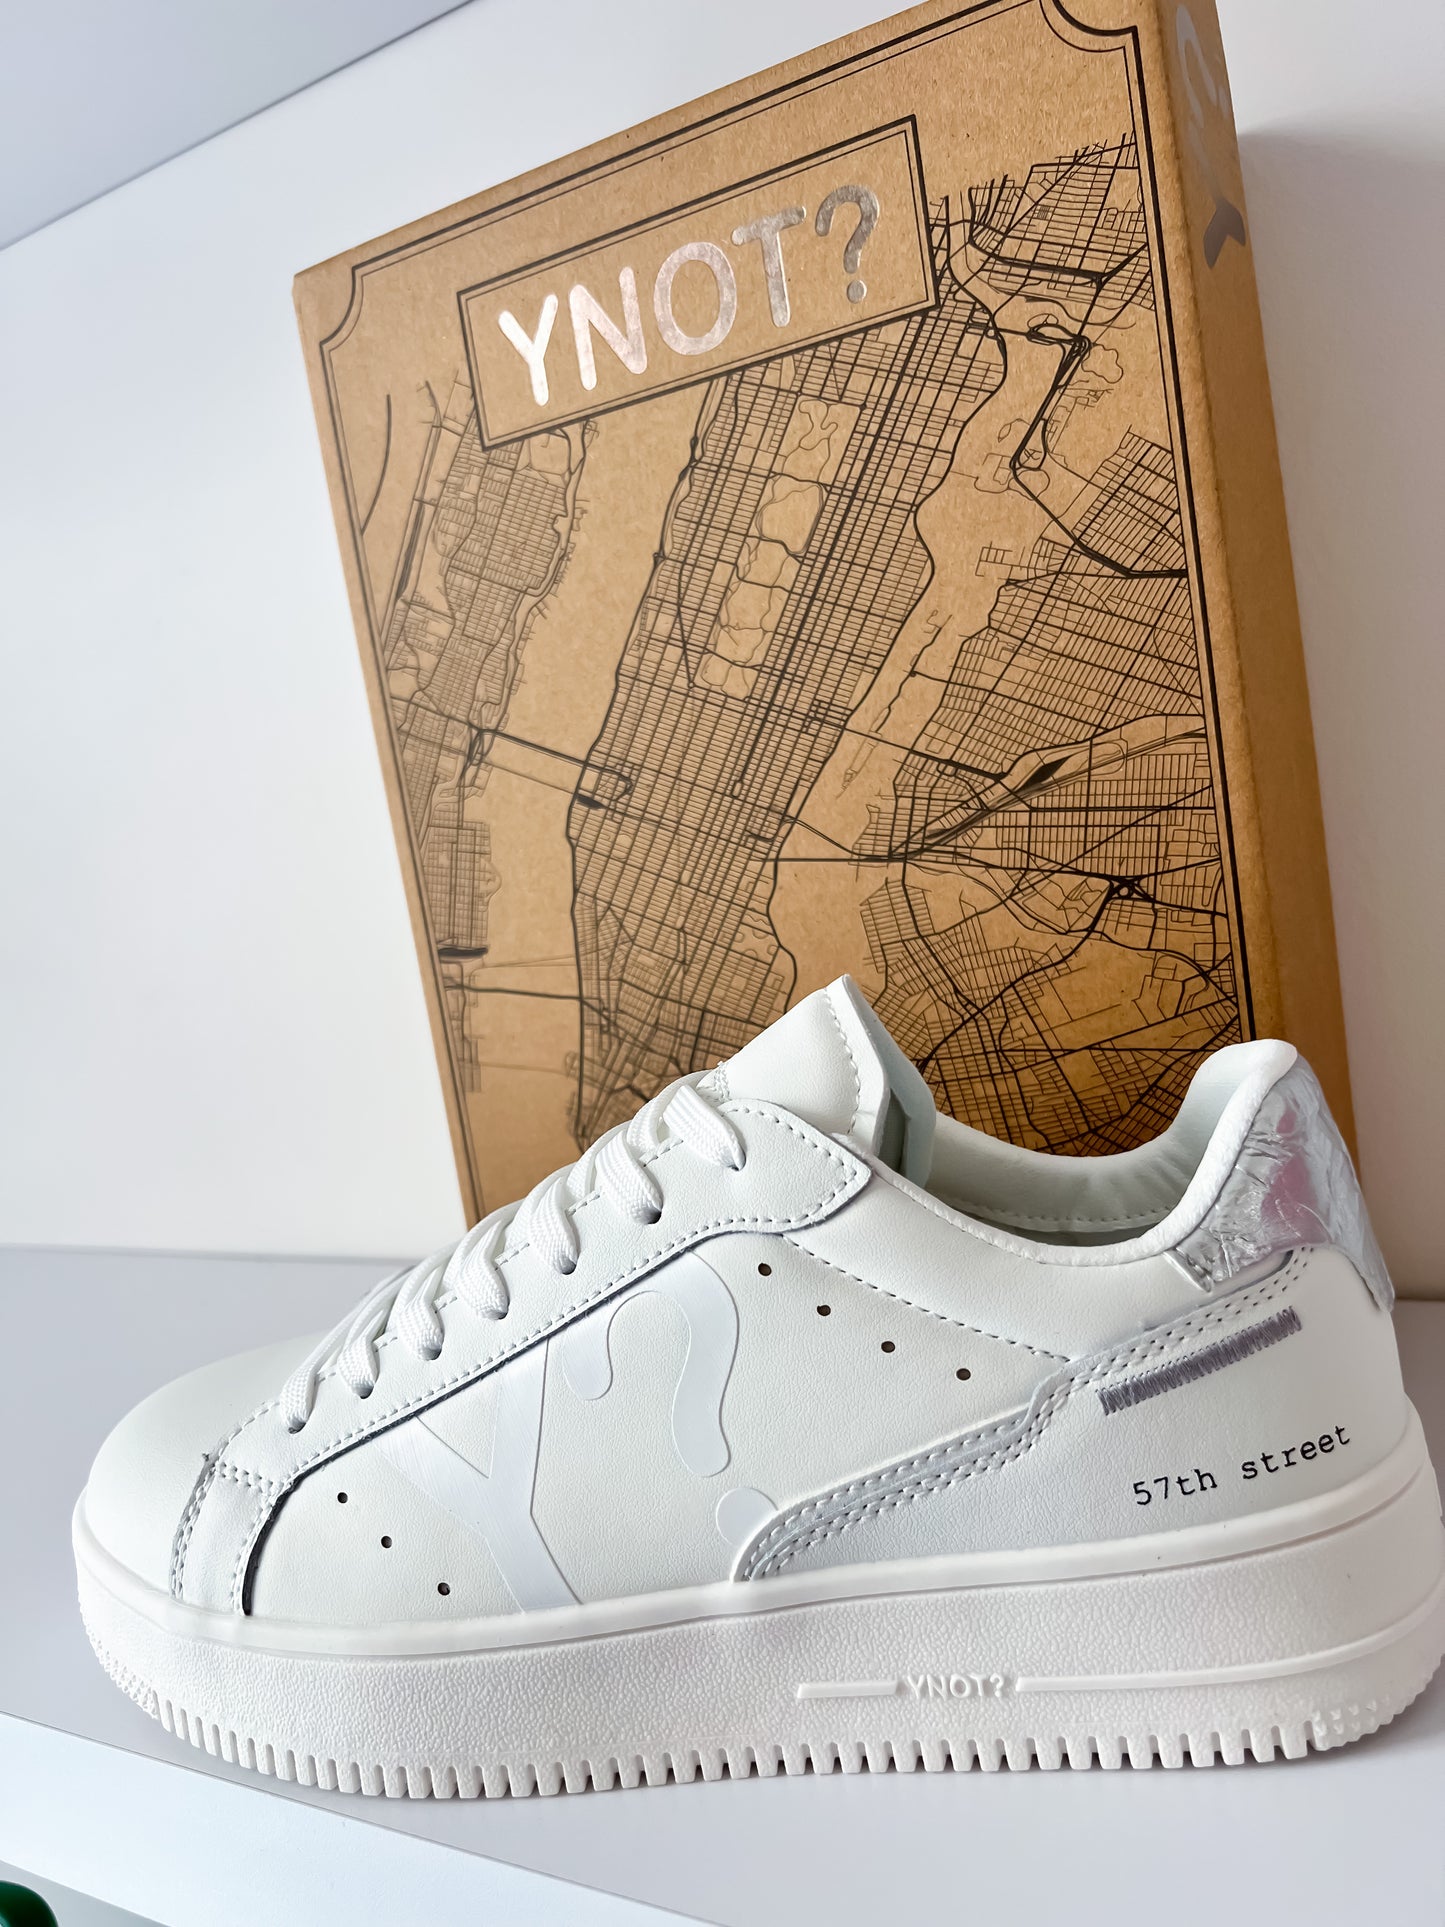 Sneakers street Ynot?